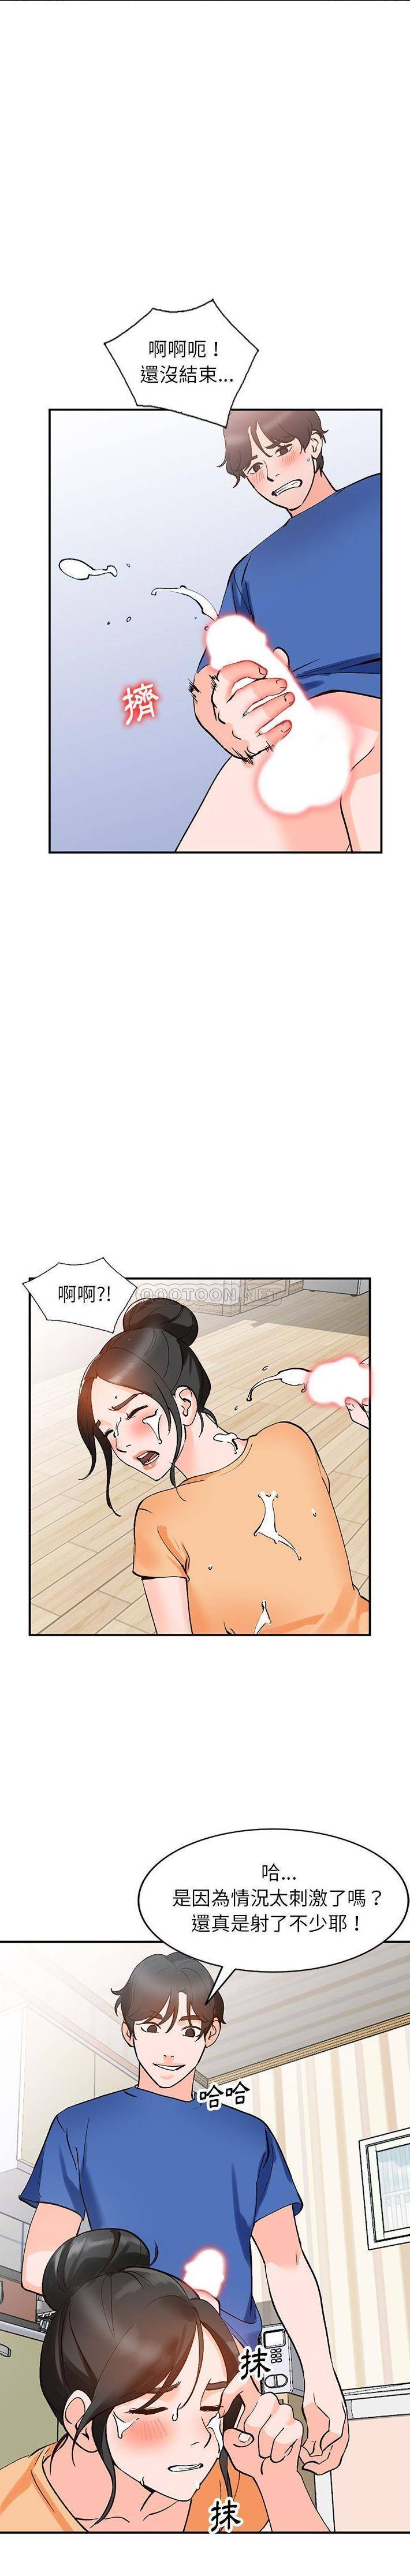 韩国污漫画 她們的小秘密(小鎮上的女人們) 第11话 14